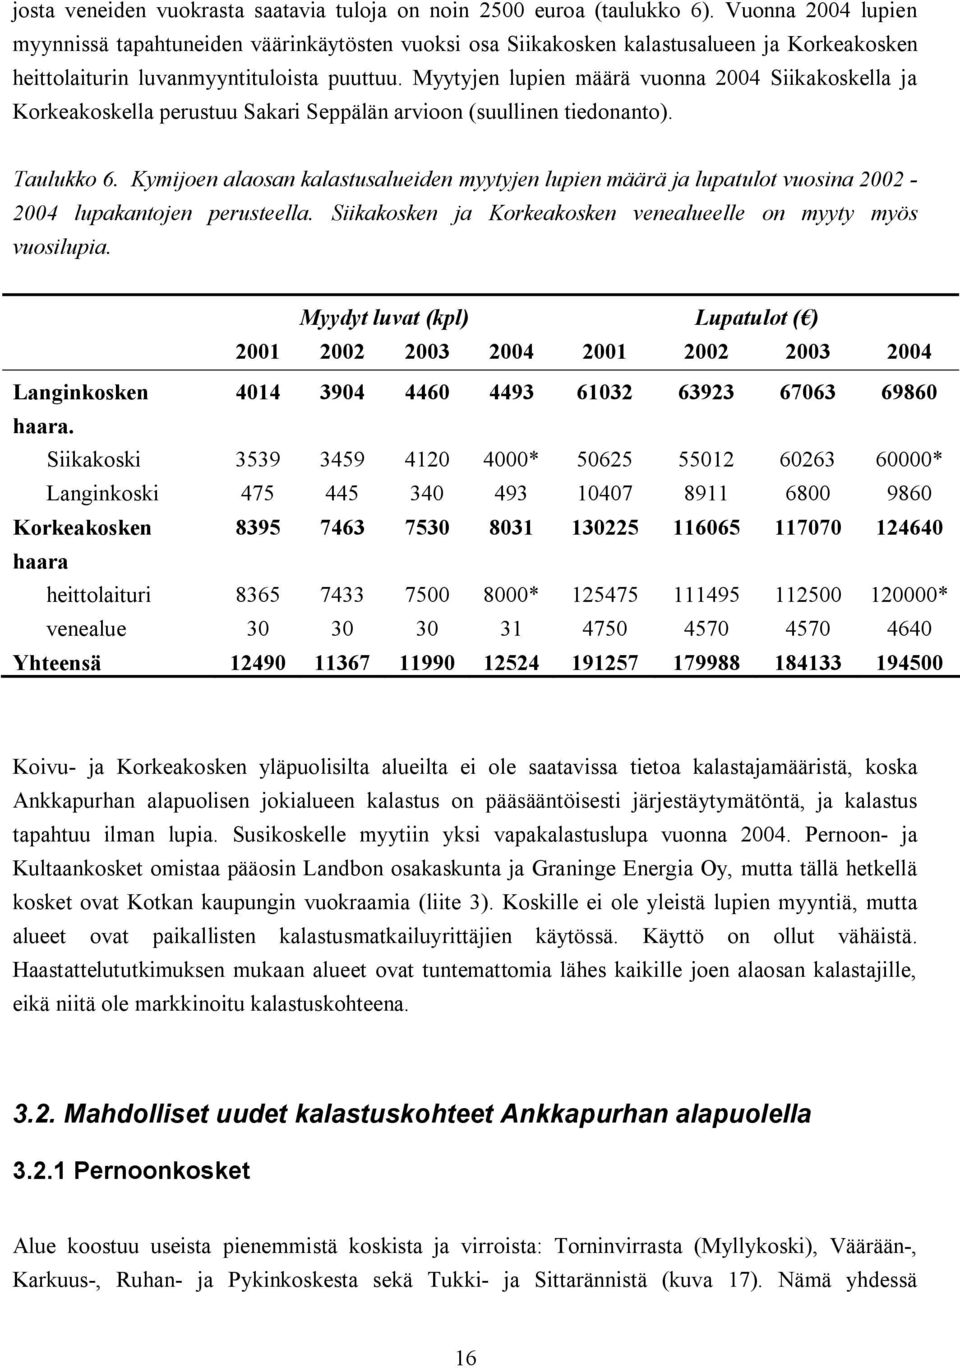 Myytyjen lupien määrä vuonna 2004 Siikakoskella ja Korkeakoskella perustuu Sakari Seppälän arvioon (suullinen tiedonanto). Taulukko 6.